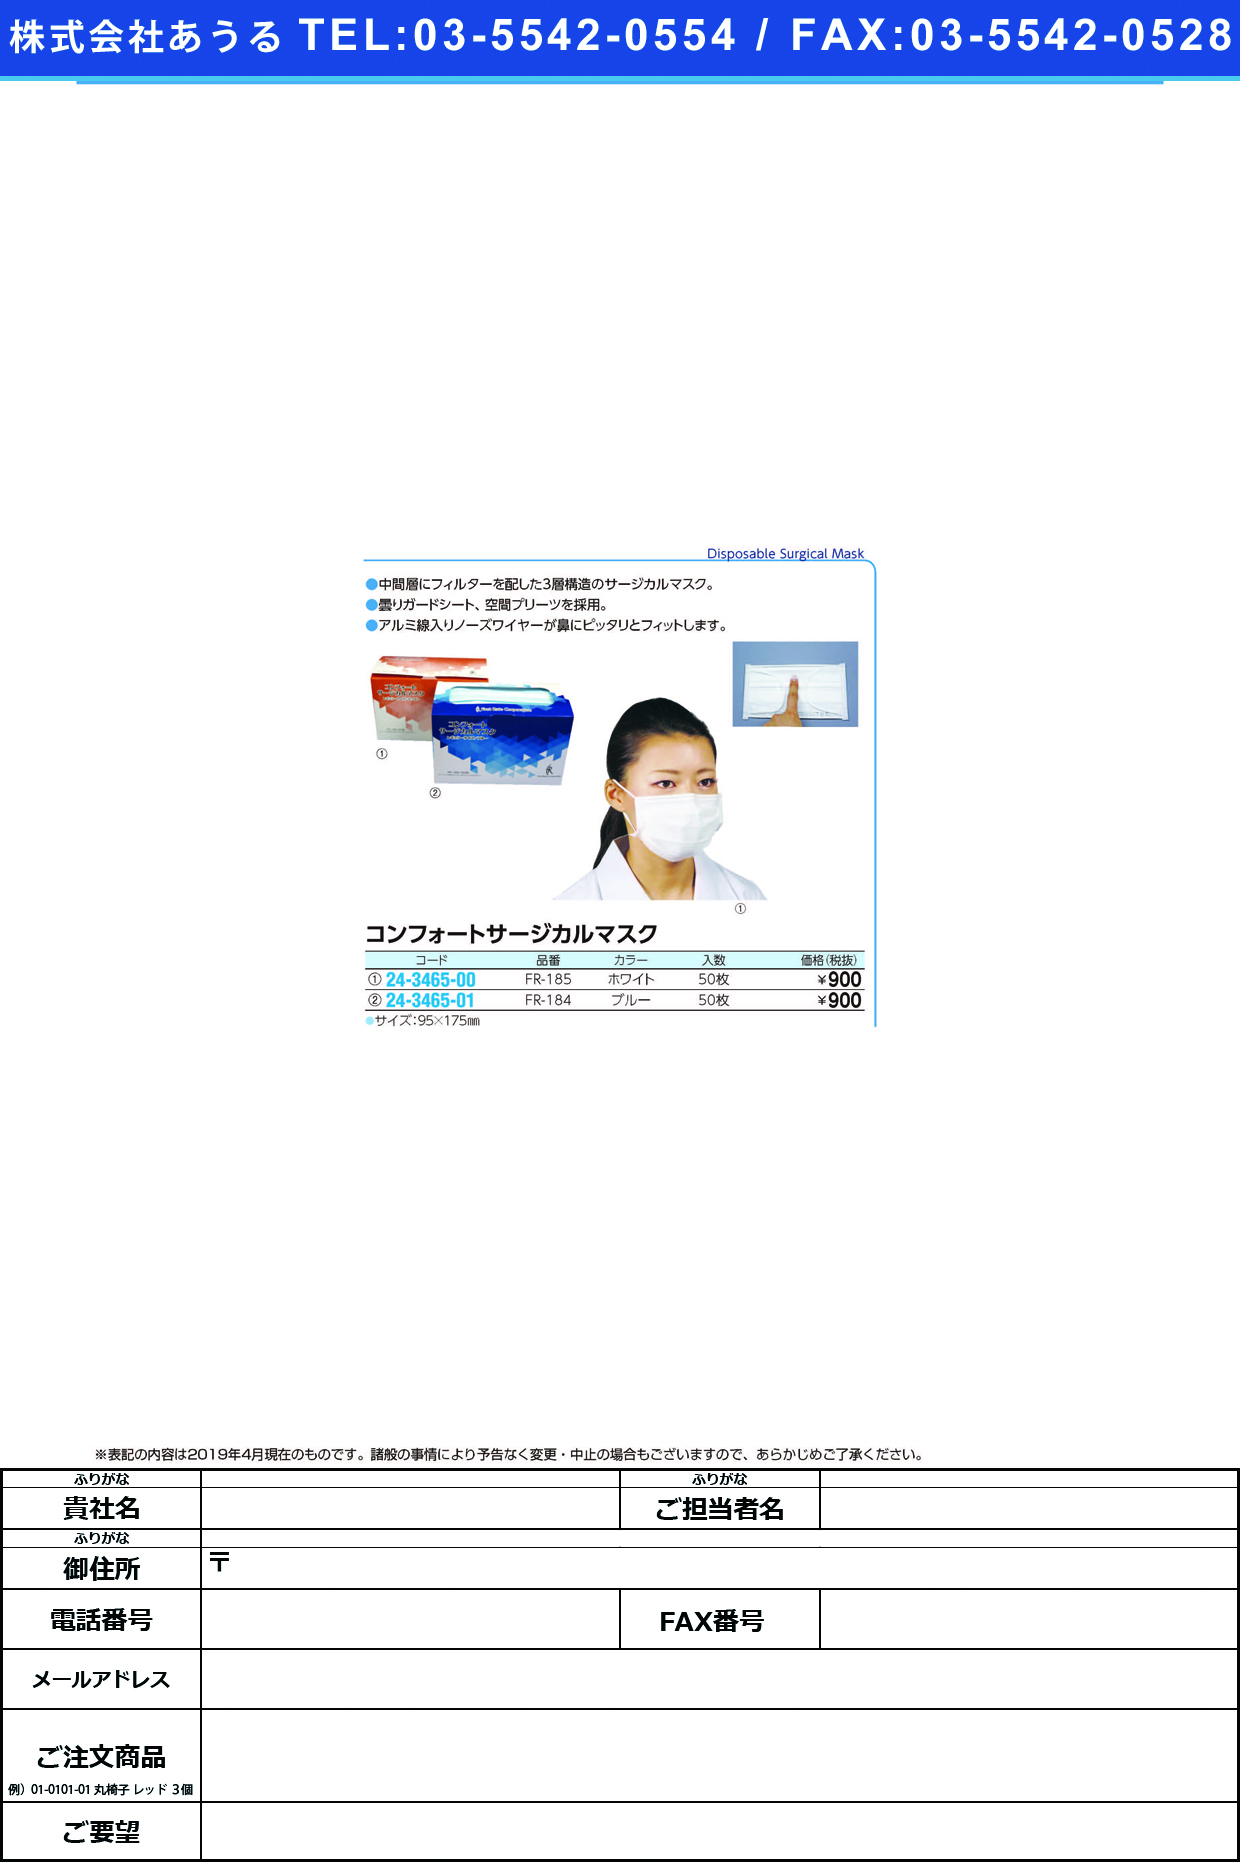 (24-3465-01)コンフォートサージカルマスク FR-184(ﾌﾞﾙｰ)50ﾏｲ ｺﾝﾌｫｰﾄｻｰｼﾞｶﾙﾏｽｸ(ファーストレイト)【1箱単位】【2019年カタログ商品】